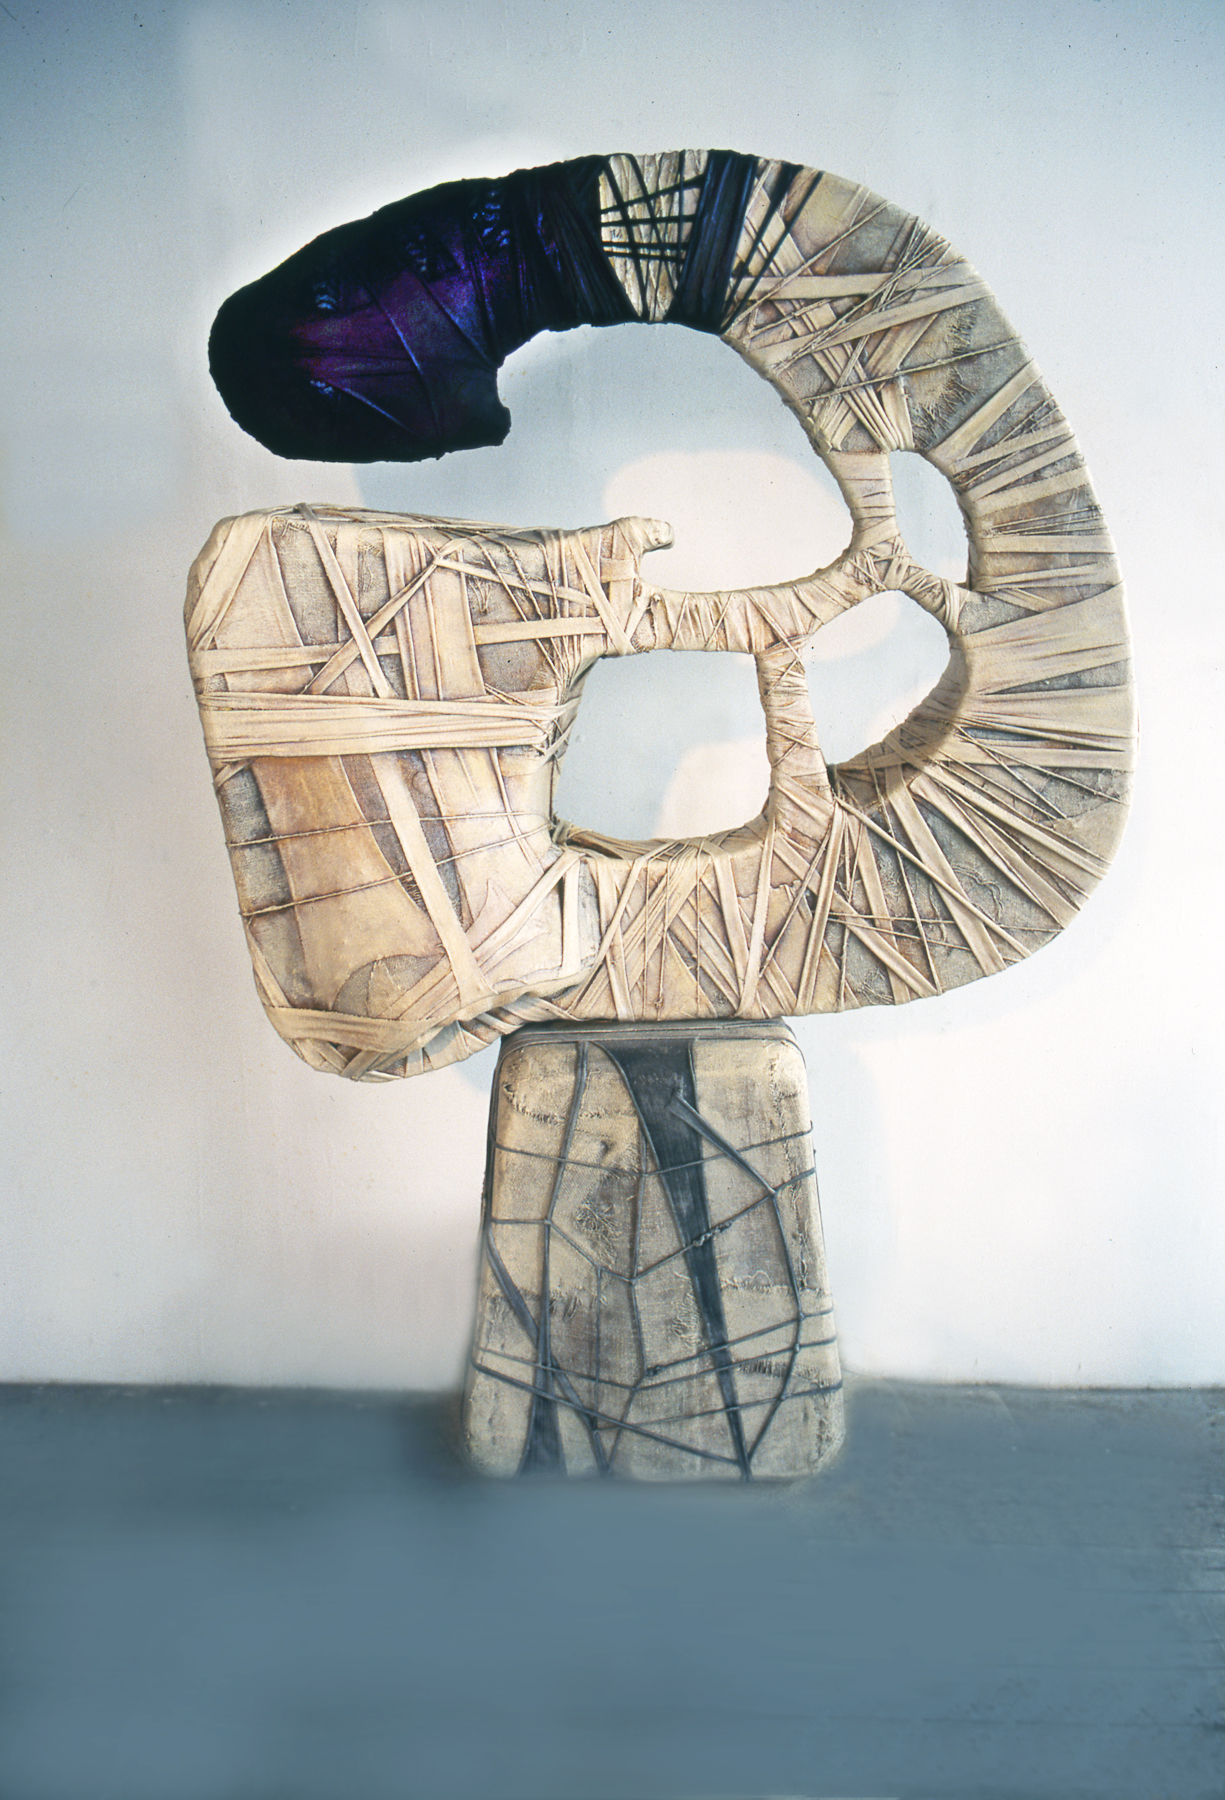 Sculpture, wood, mixed media